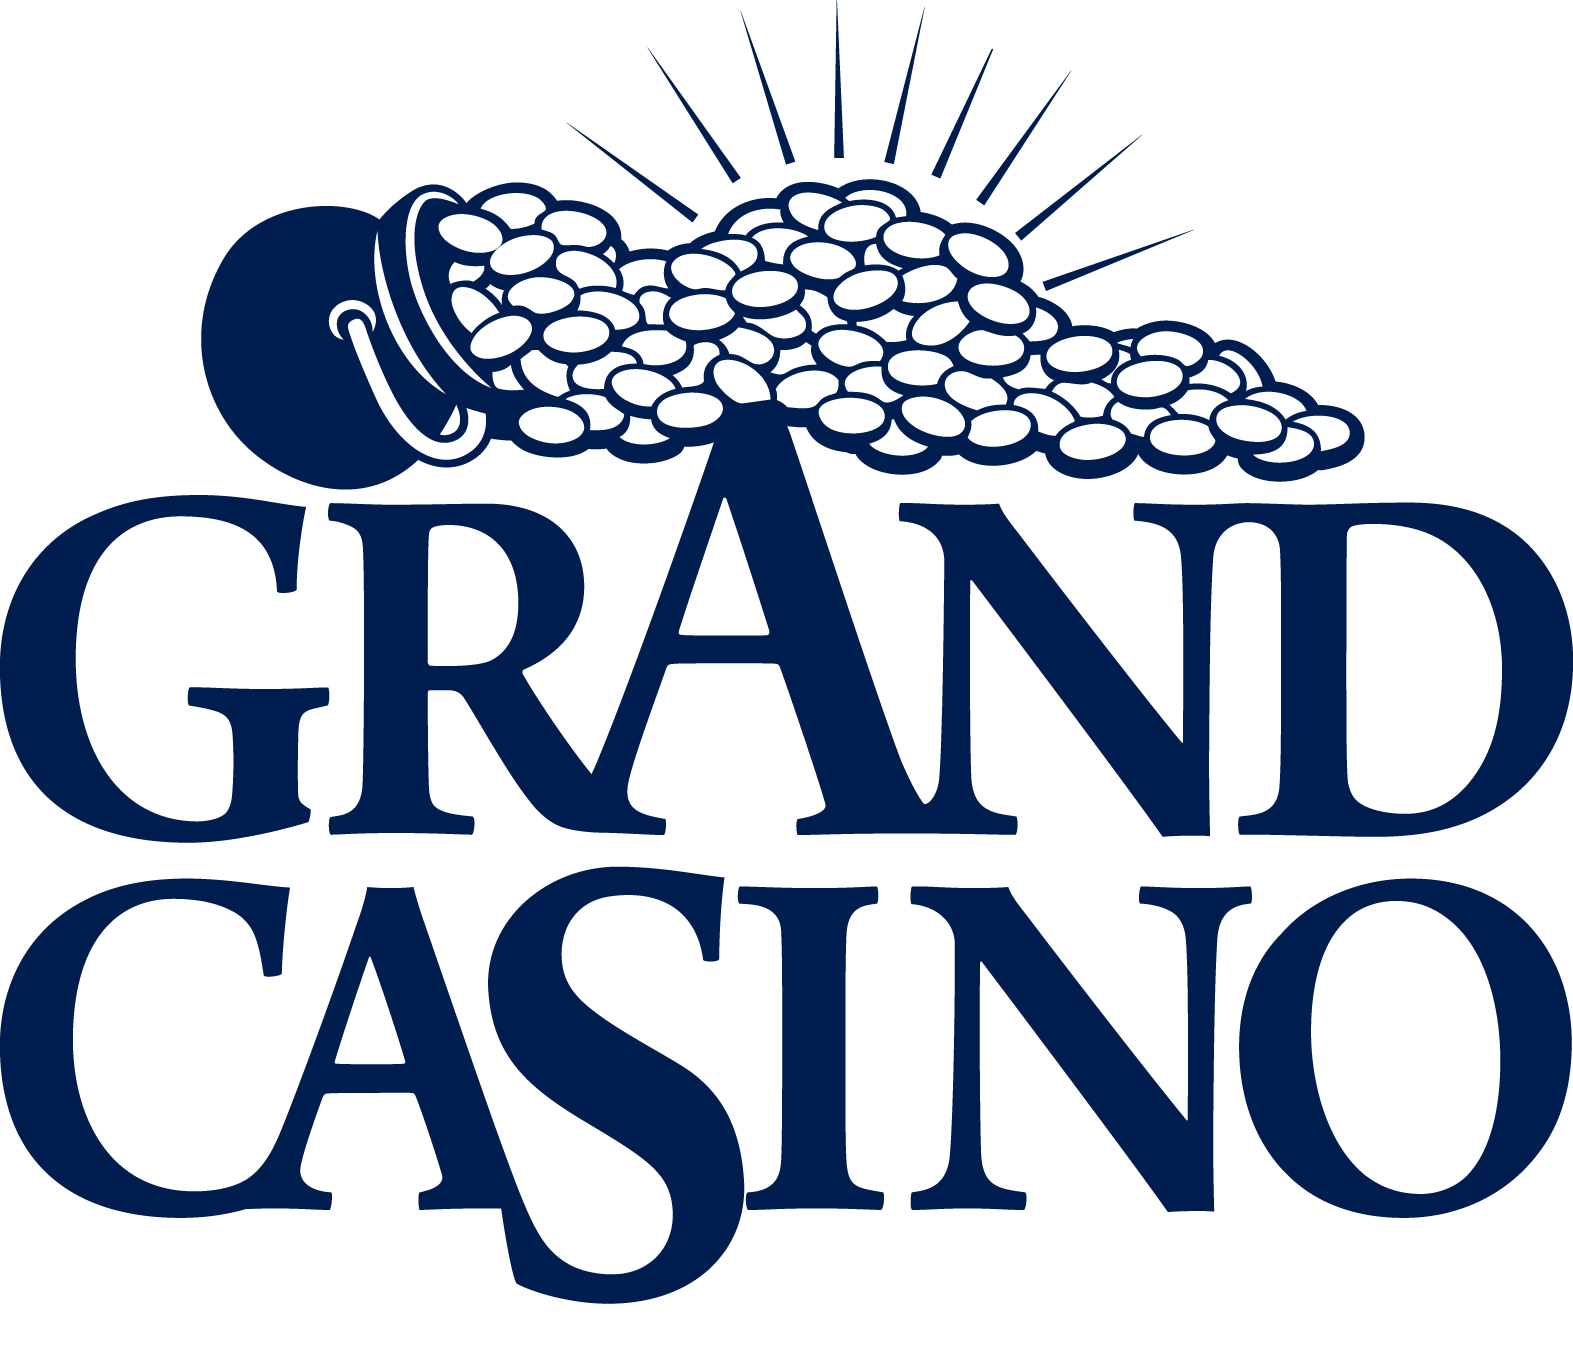 Grand casino